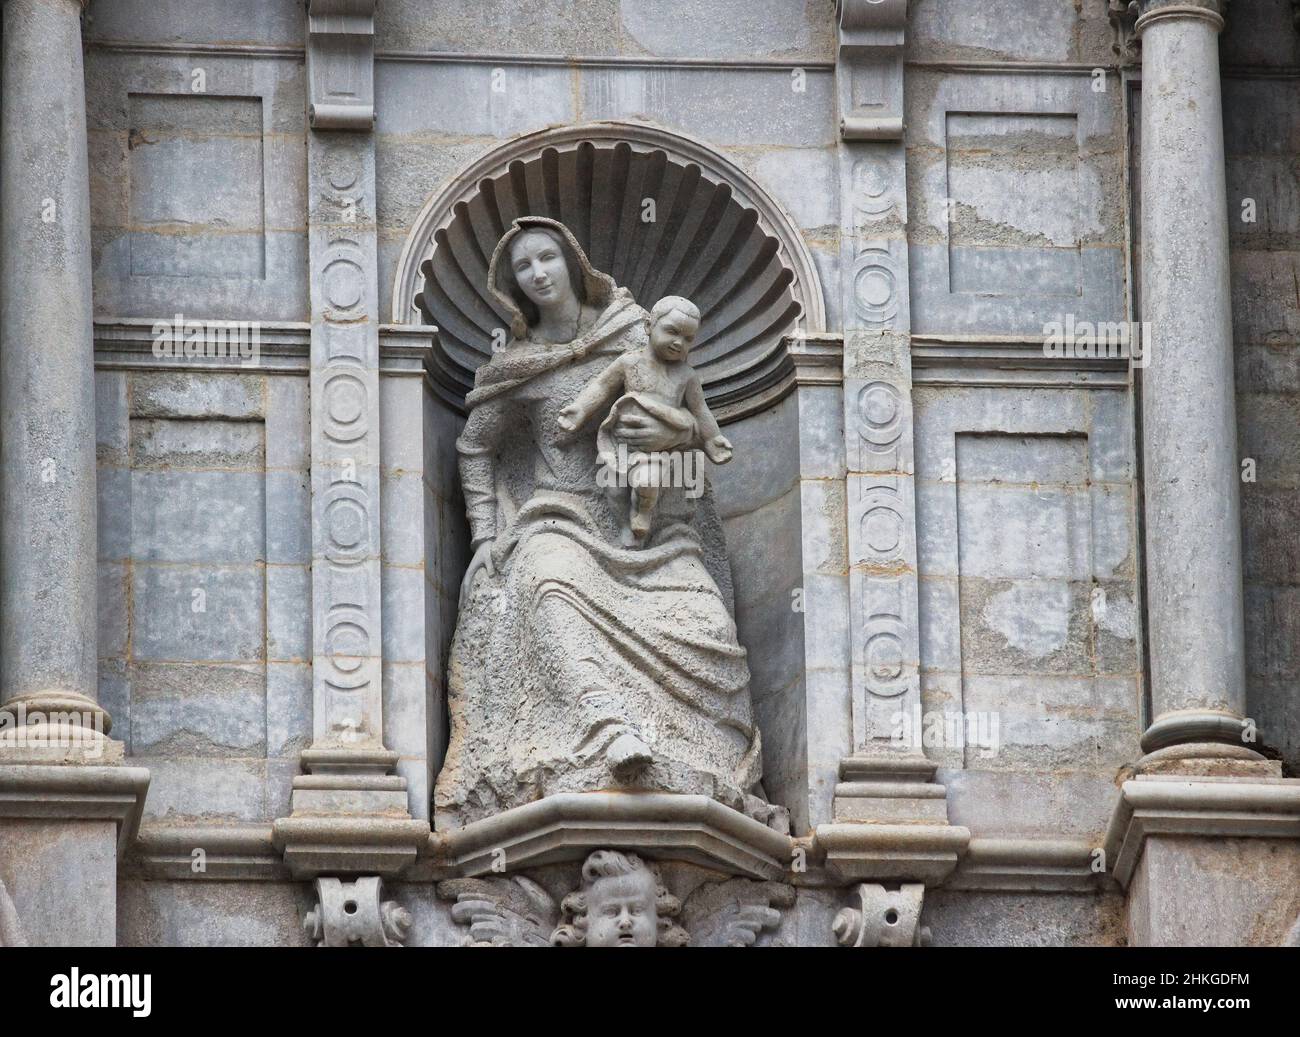 Quelques détails de la belle cathédrale catalane-gothique, de Gérone, Espagne, Costa Brava Banque D'Images